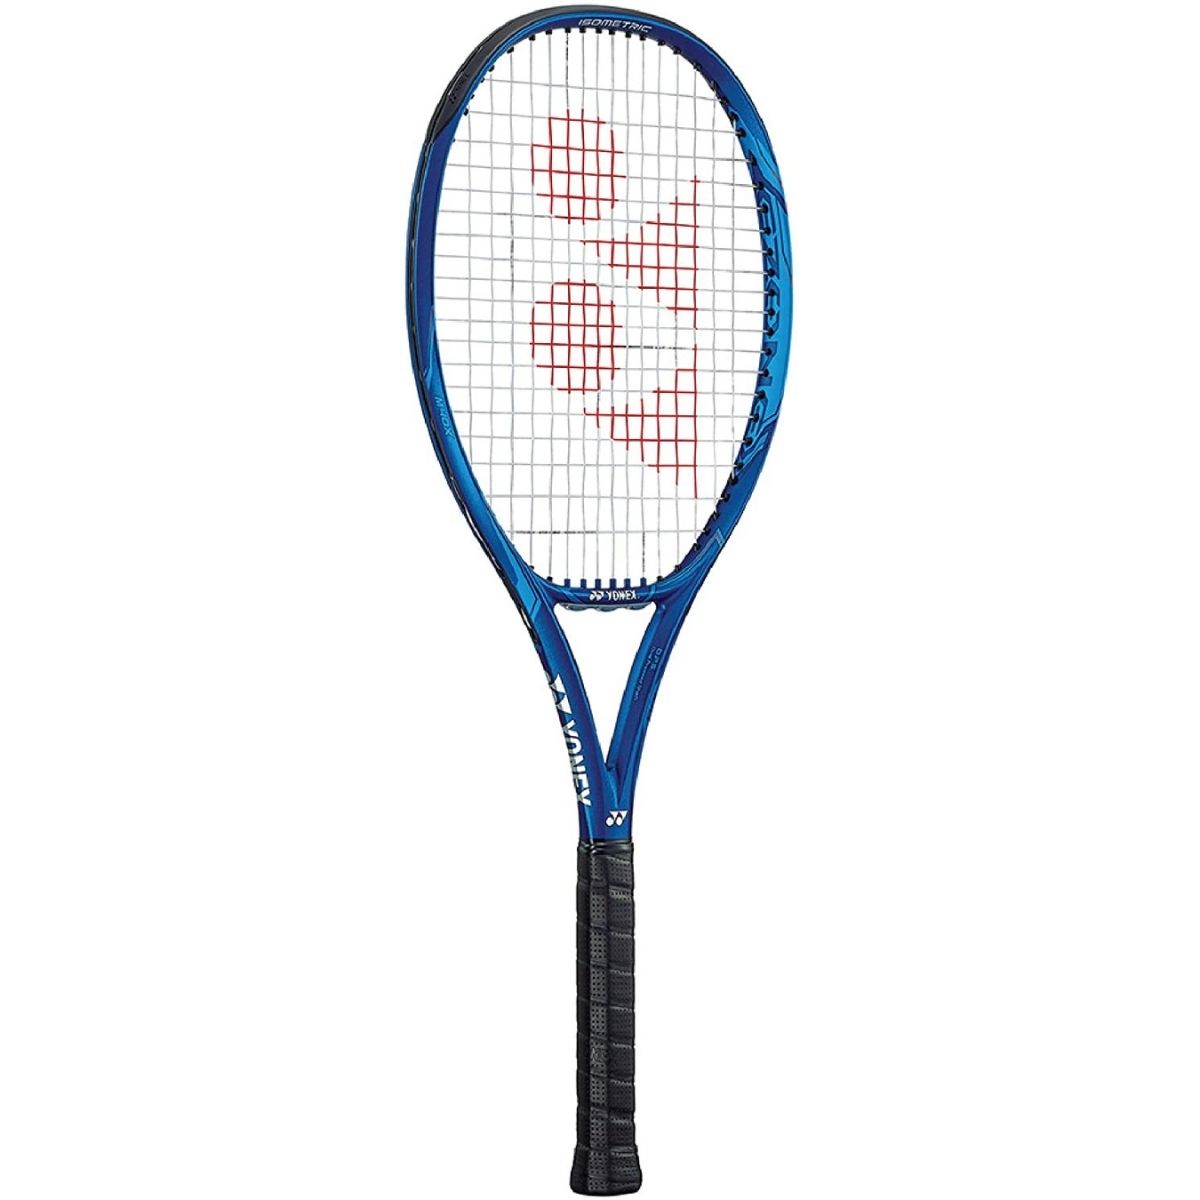 Yonex Ezone 98 Plus tennis racket review